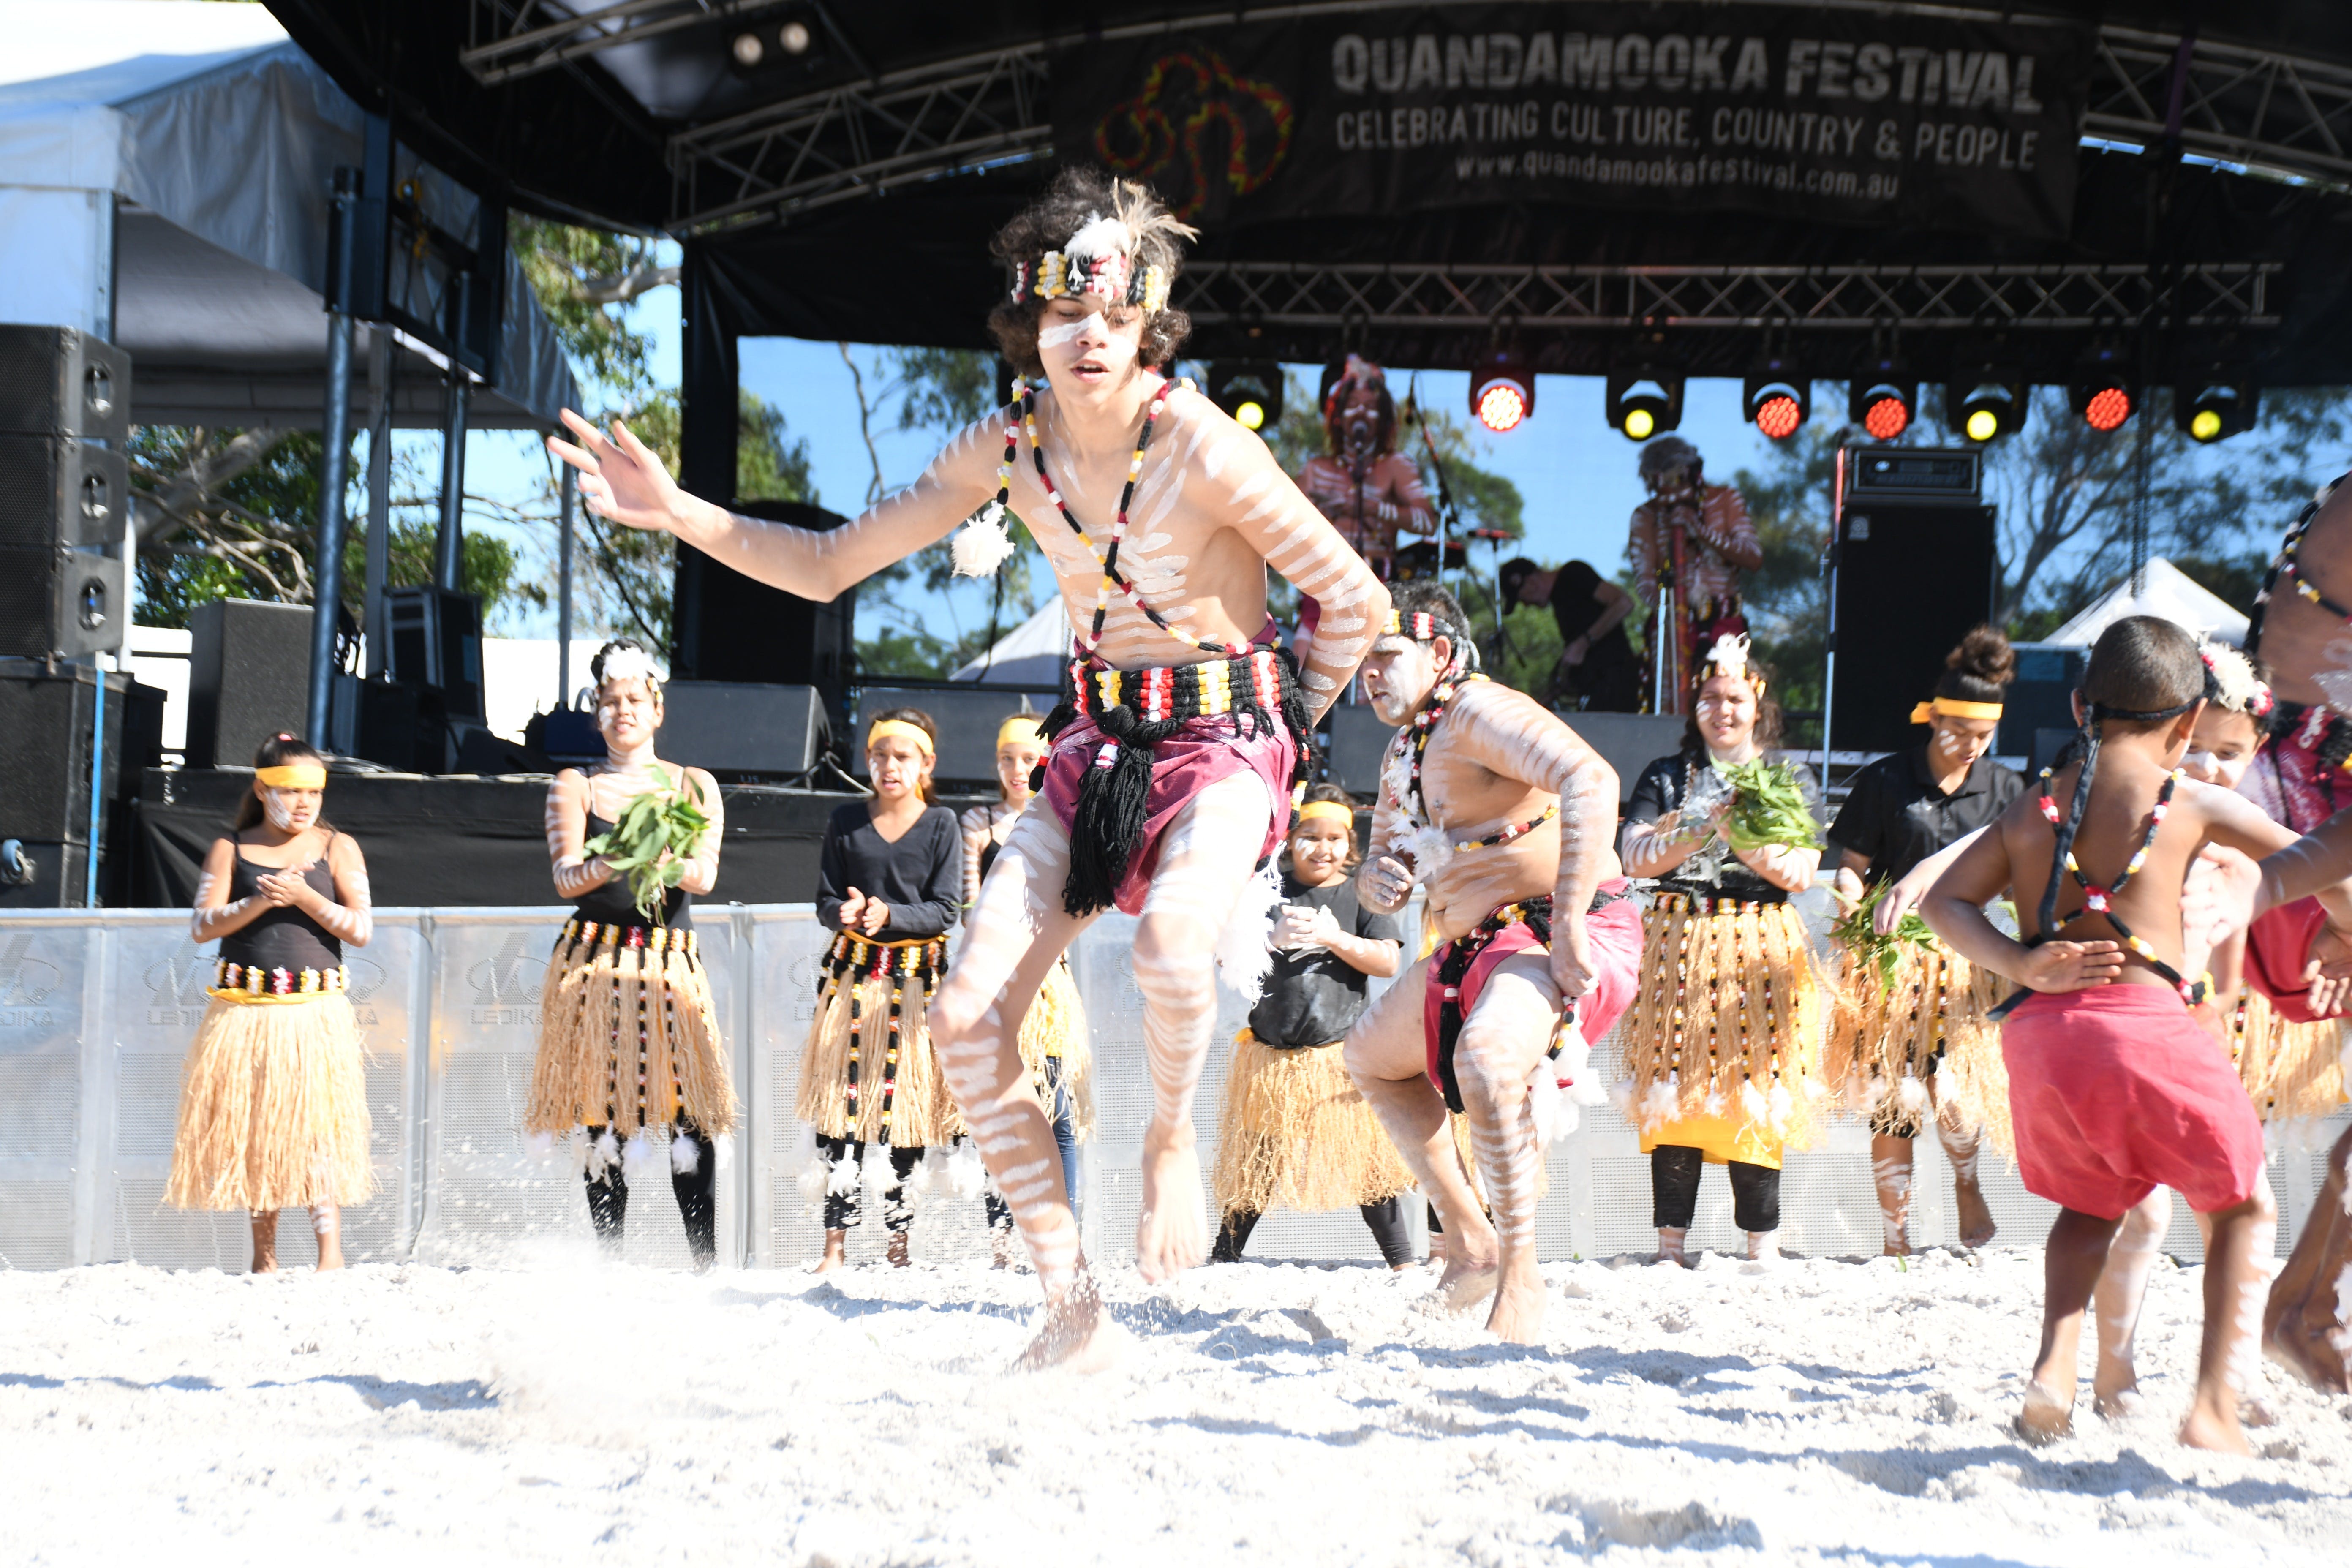 Quandamooka Festival 2021 - St Kilda Accommodation